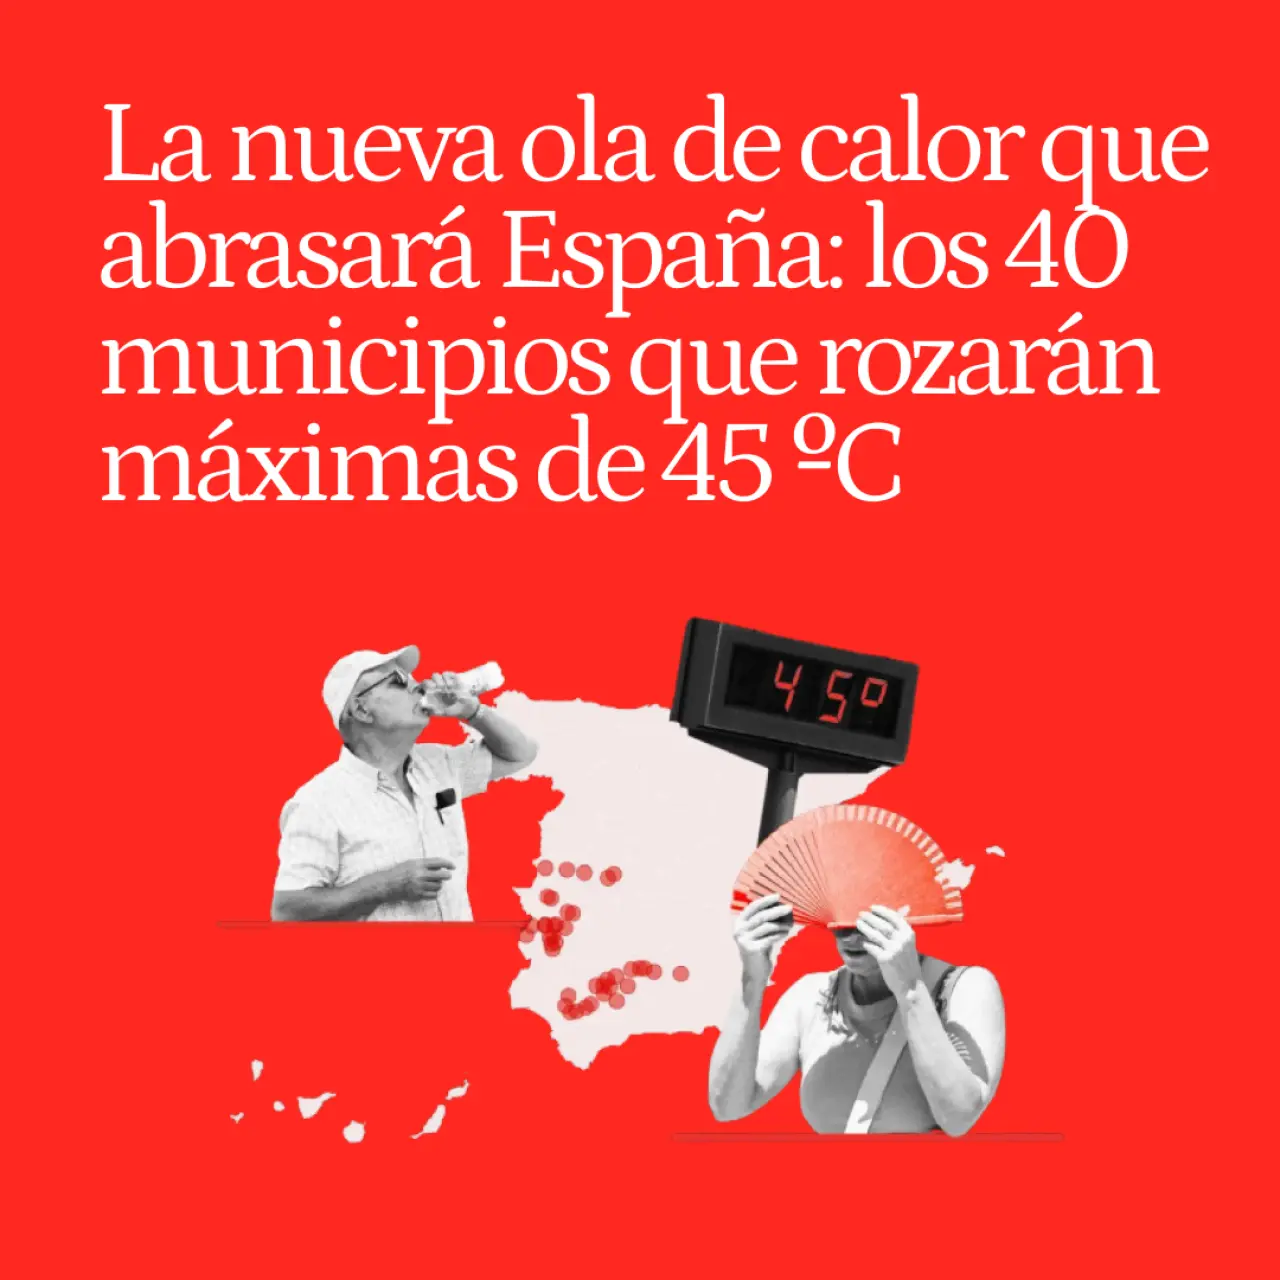 La nueva ola de calor que abrasará España ya está aquí: los 40 municipios que rozarán máximas de 45 ºC